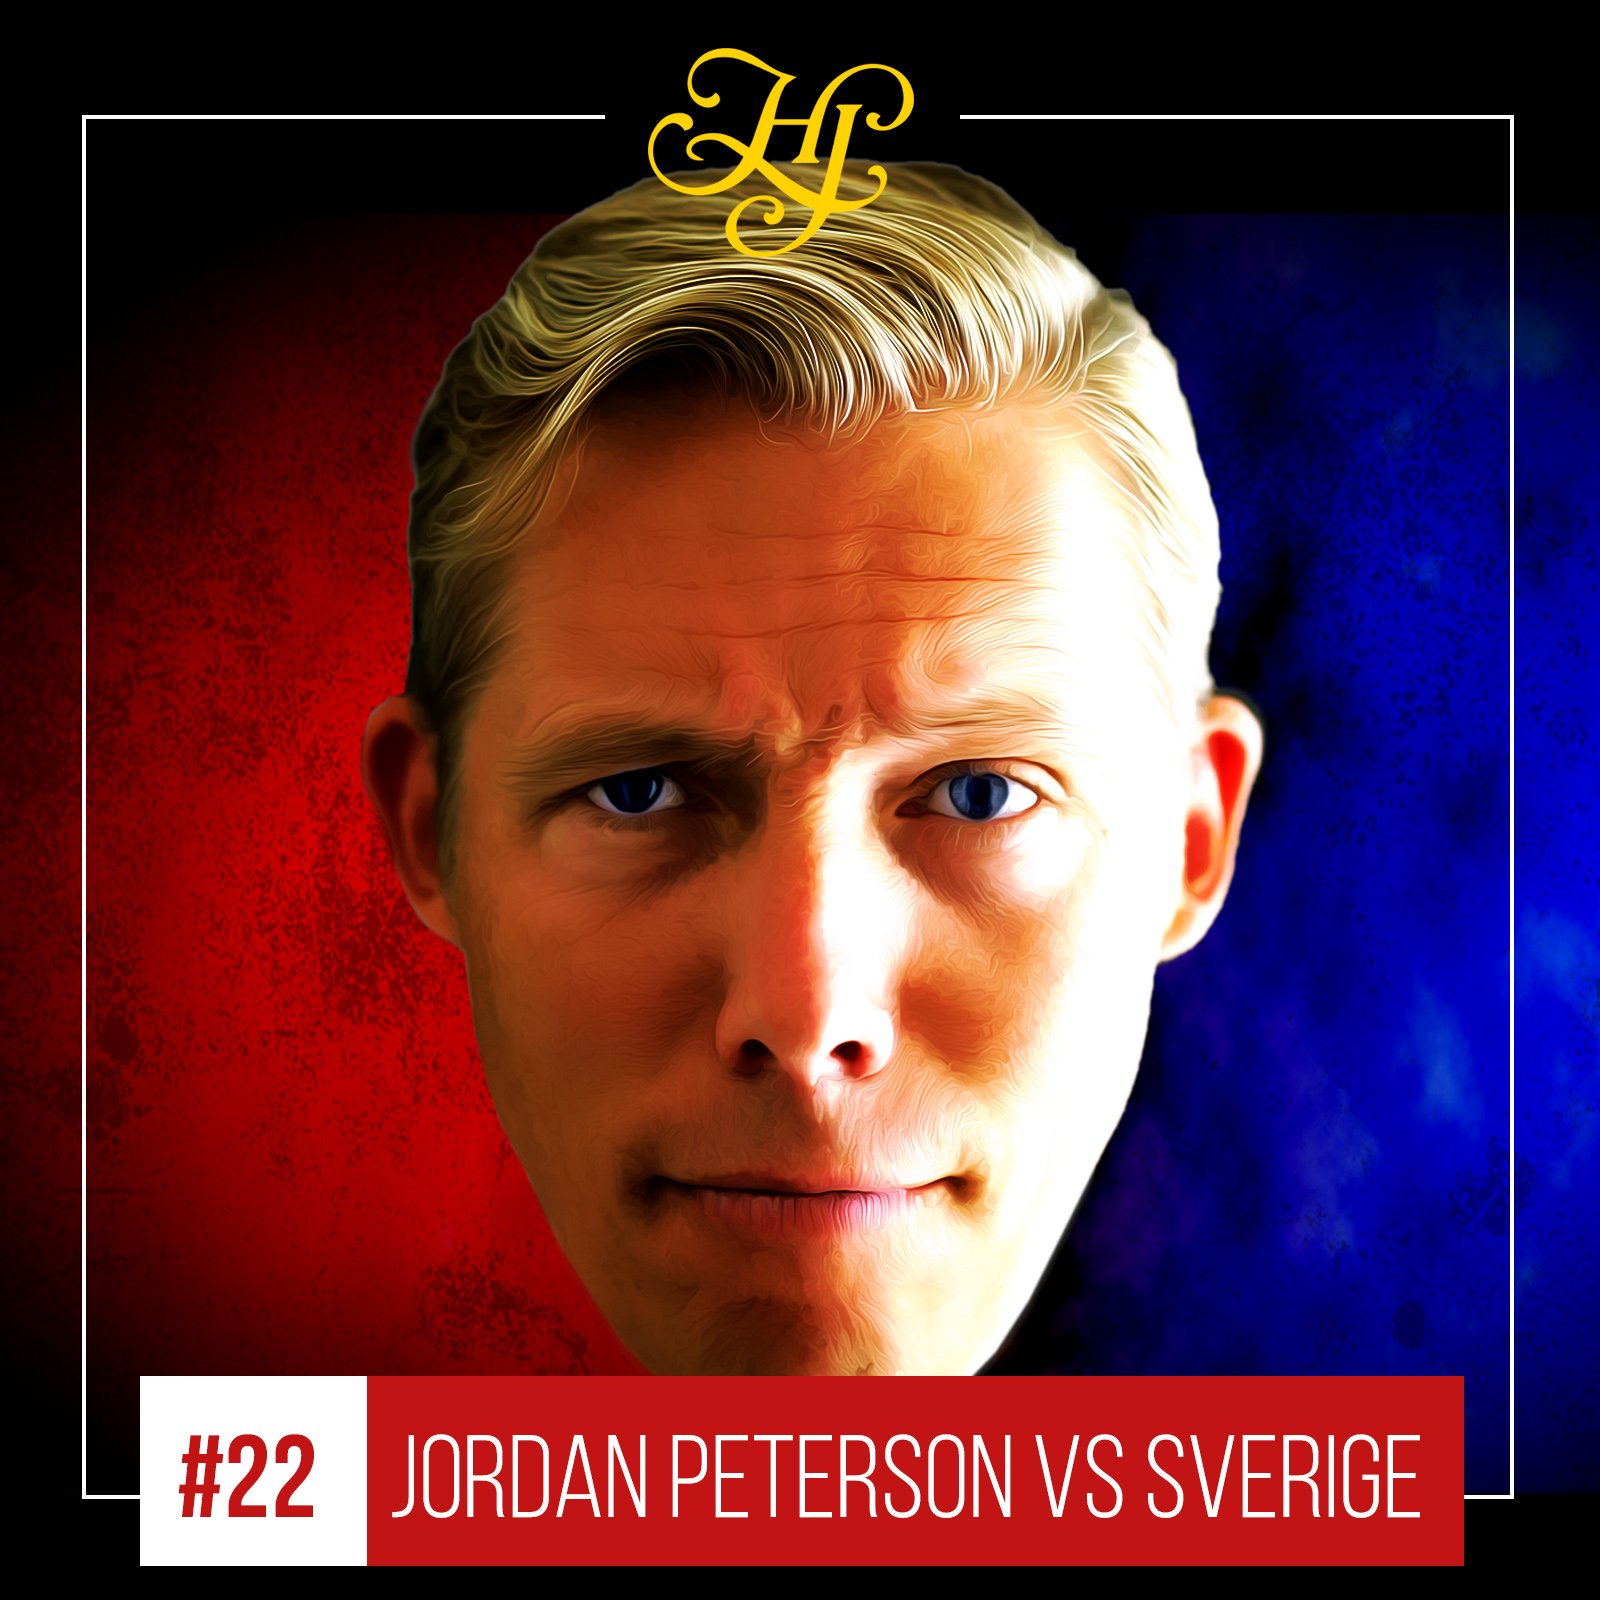 Henrik on Twitter: "🎙Jordan B vs Sverige - PODDVERSION Lyssna på min av samtalet mellan Jordan B Peterson, Skavlan och Annie Lööf. 🎵 iTunes: 💚 Spotify: https://t.co/yGYYL8EkkG 🎥